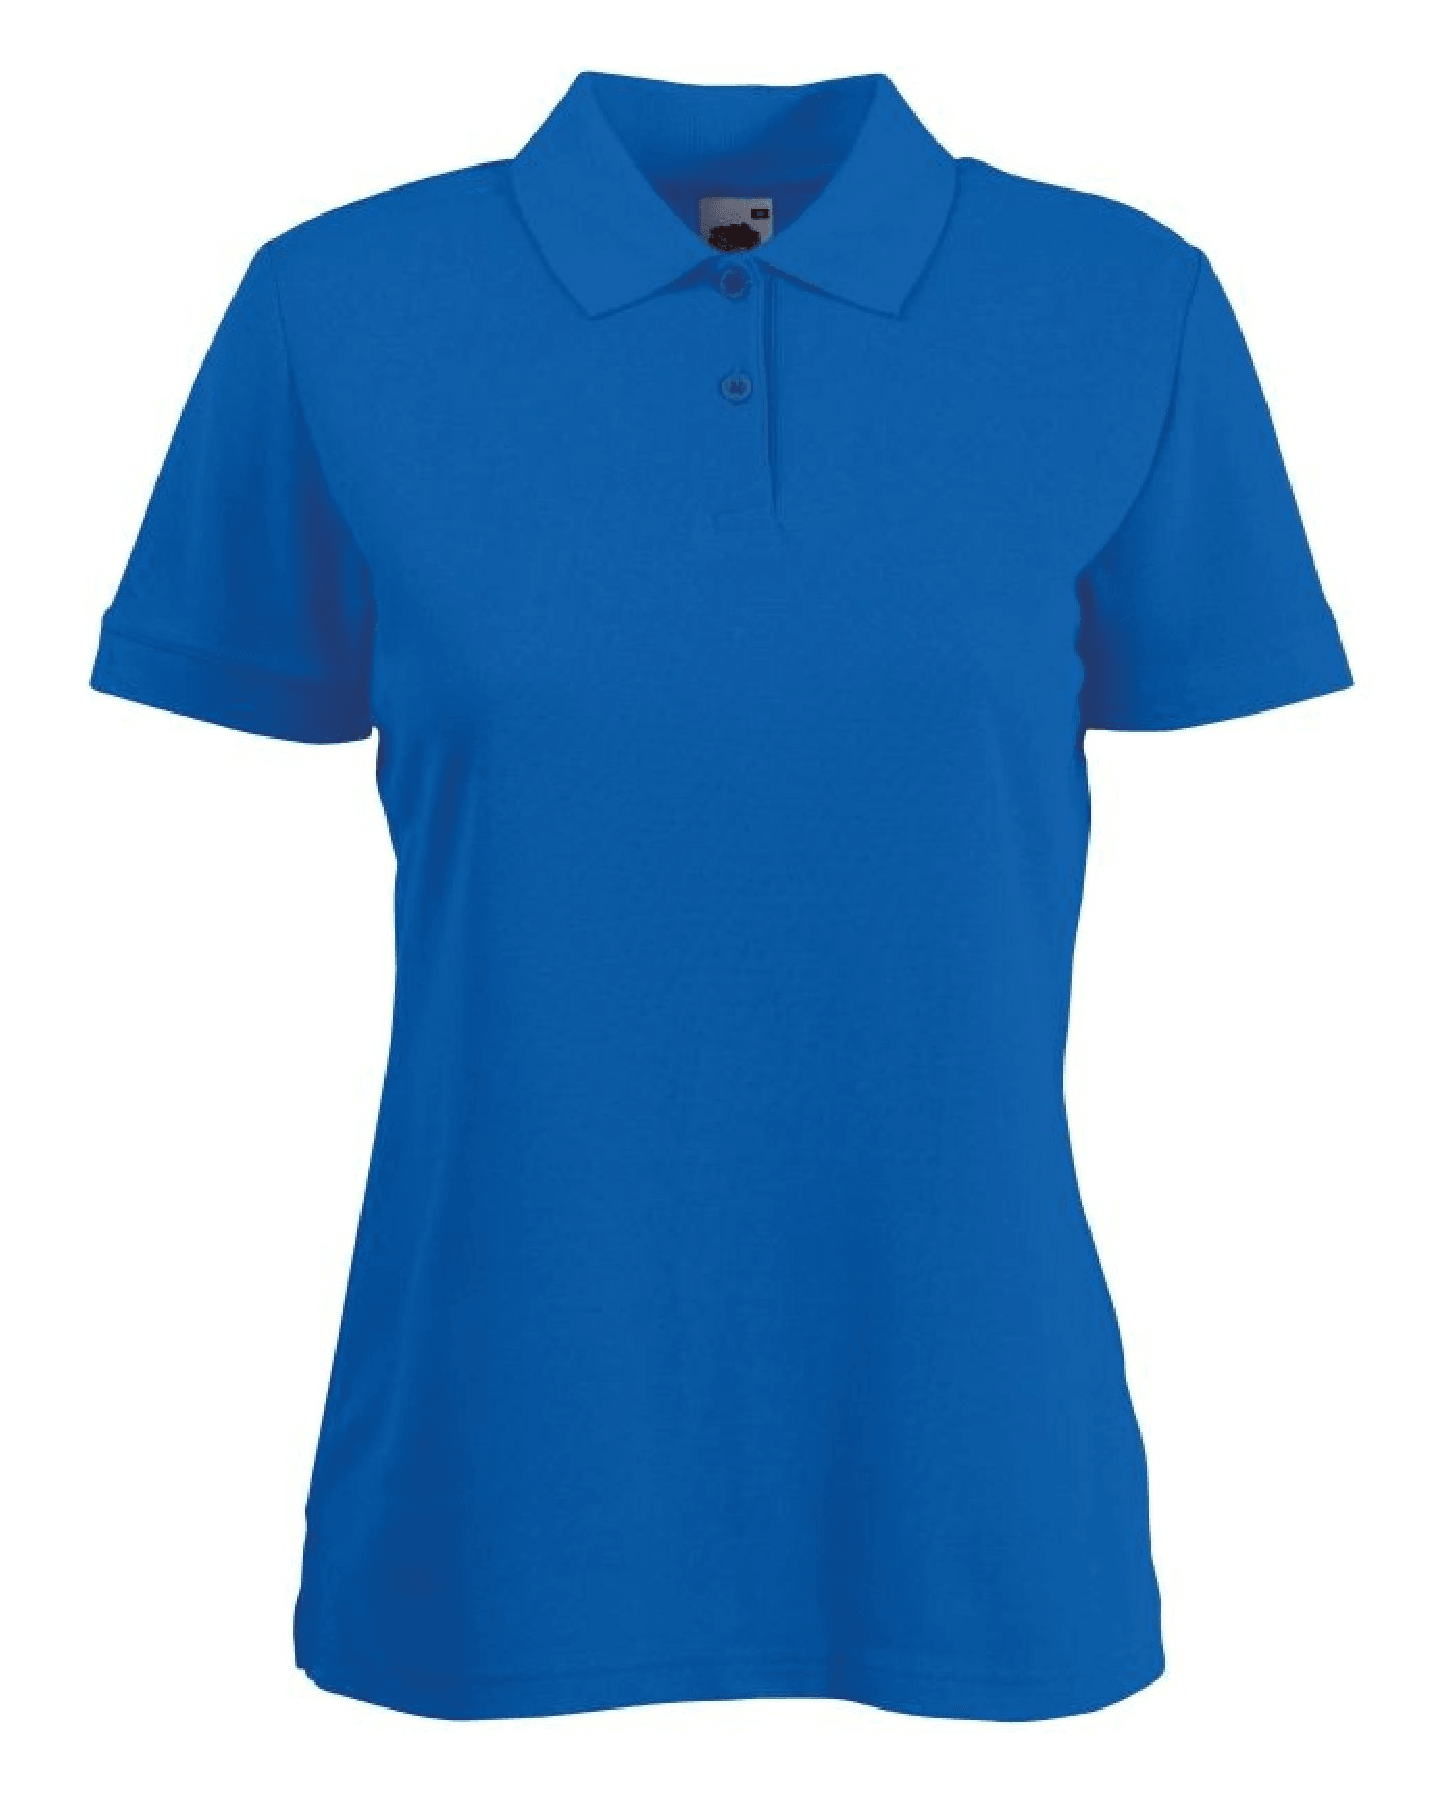 ISC – Piqué Polo Shirt (Ladies)